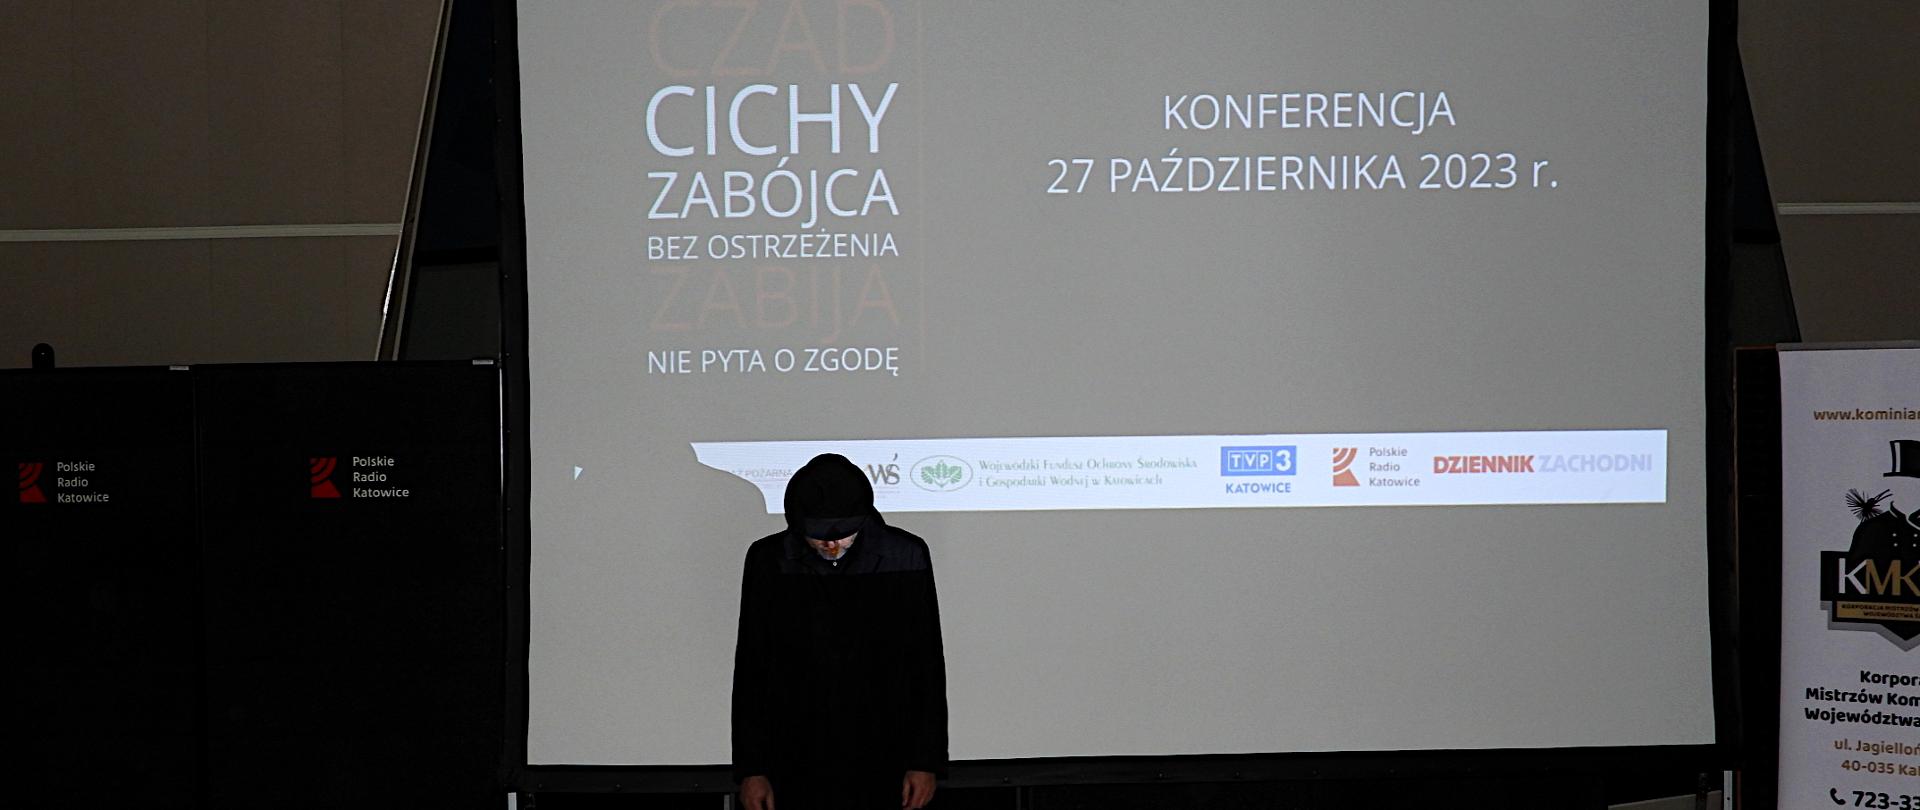 Kampania Społeczna - "Nie igraj z losem".